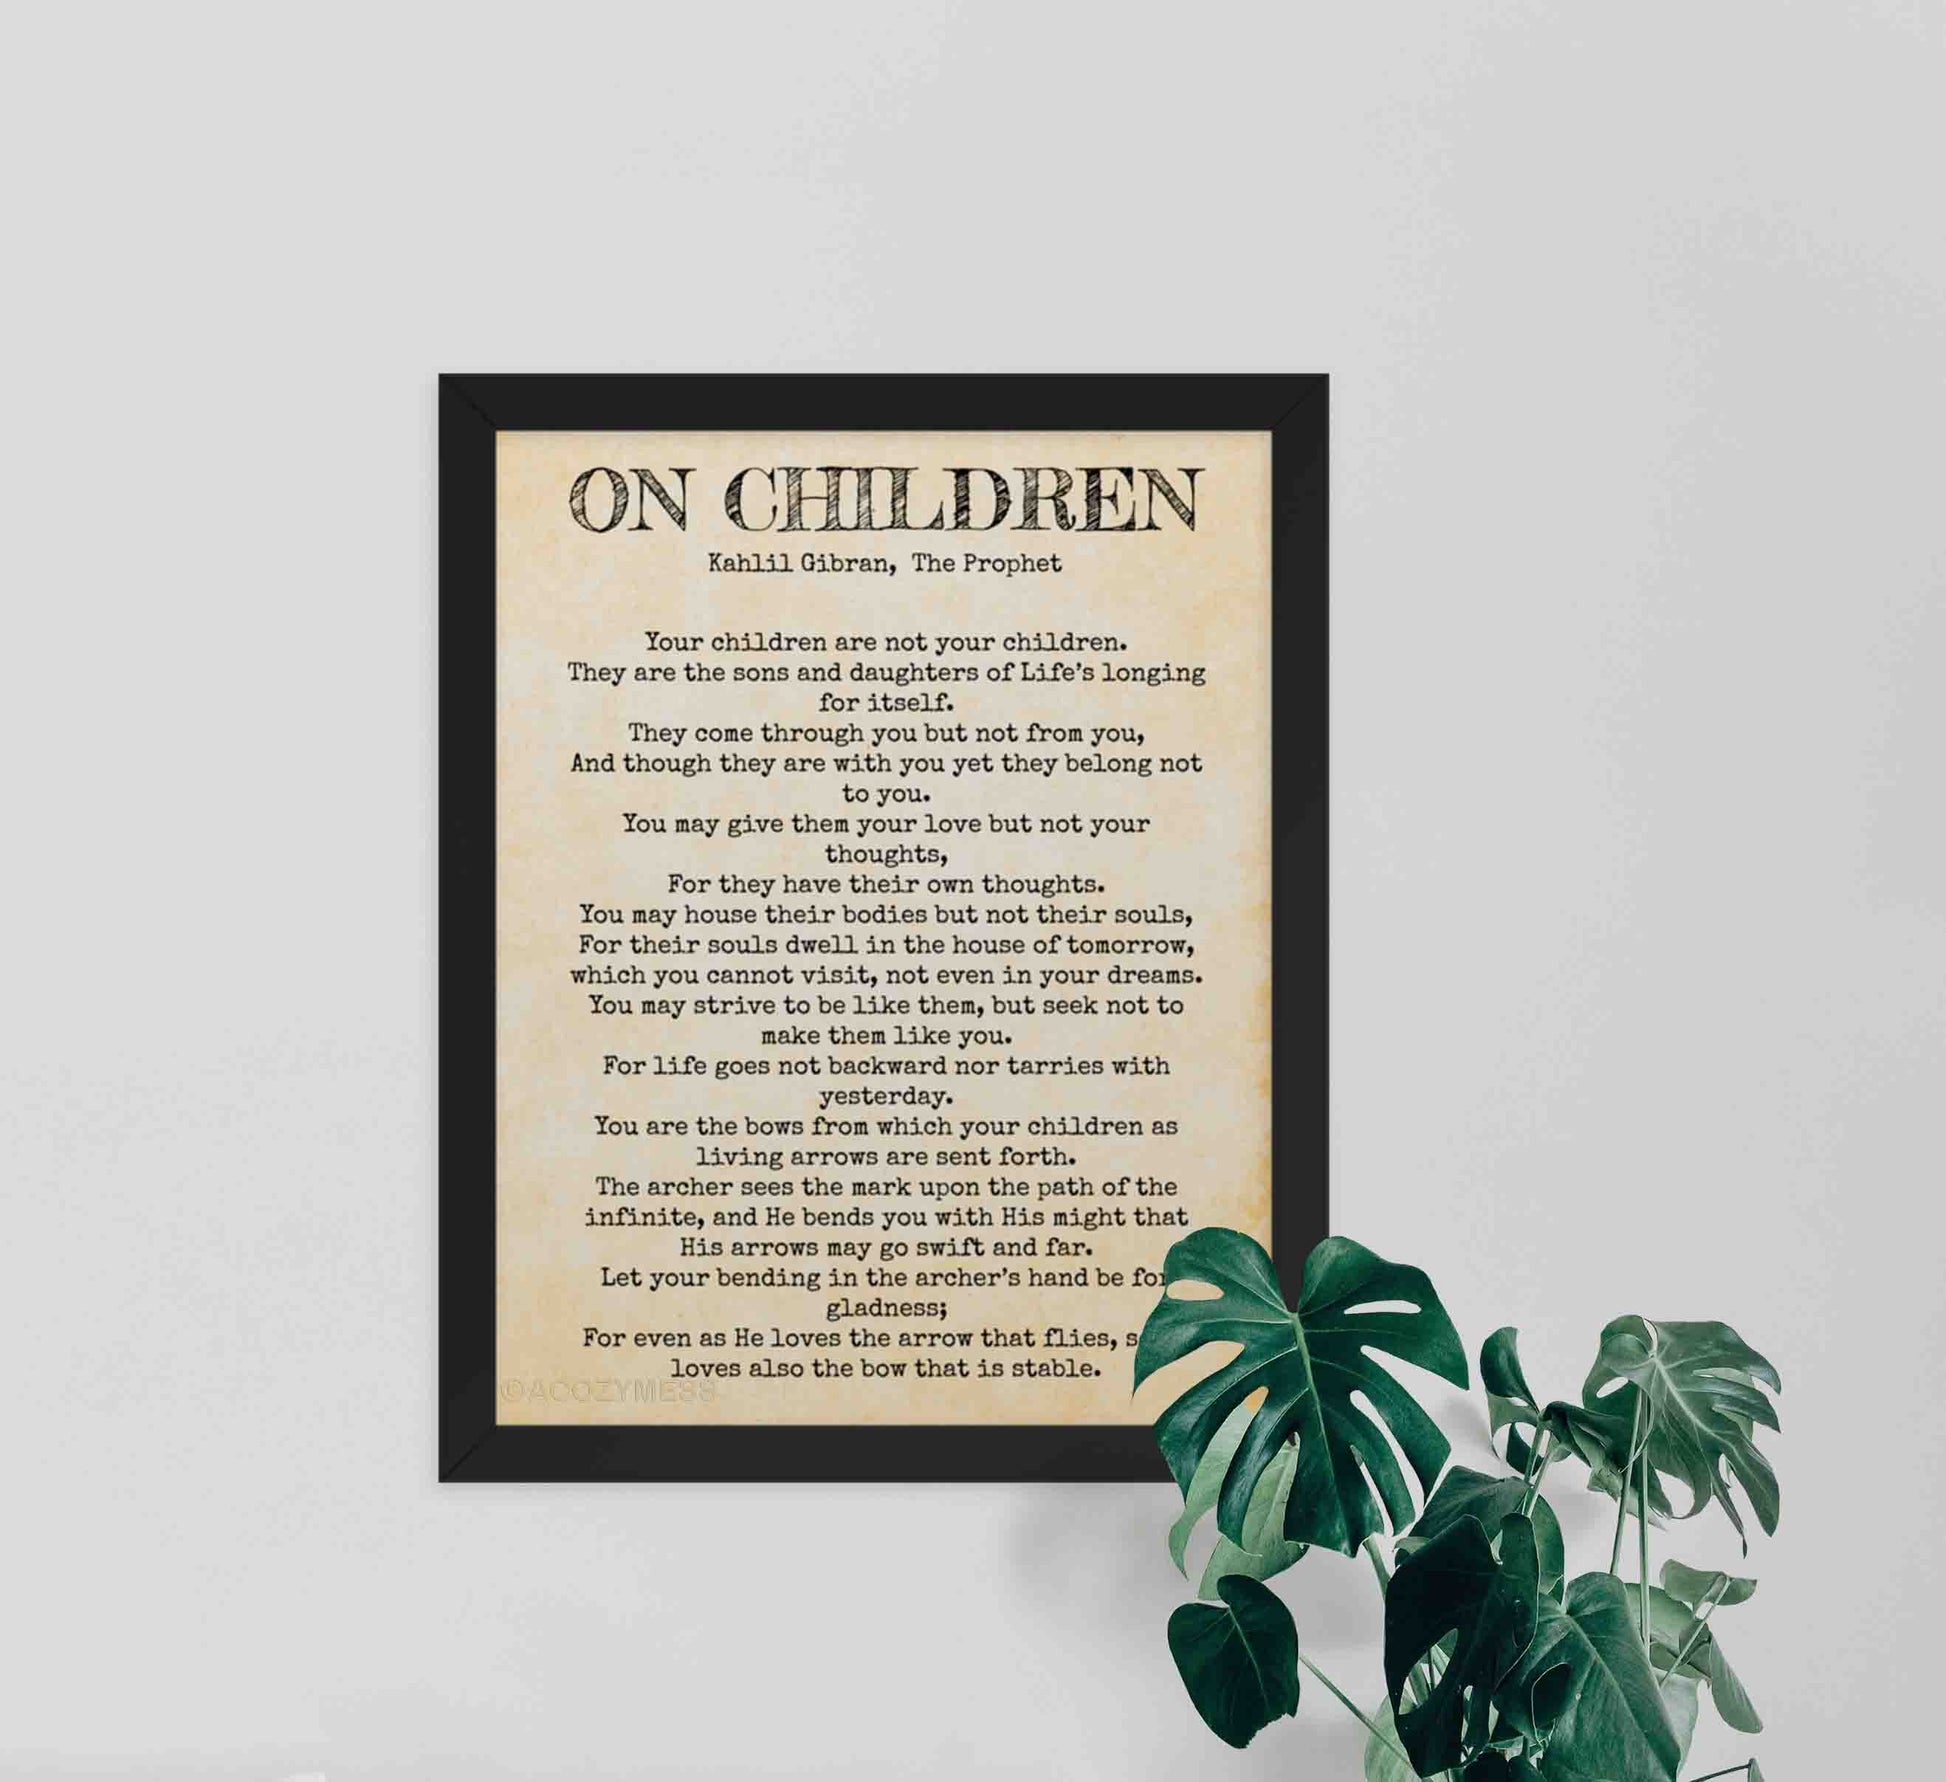 On Children by kahlil gibran poem black on rustic paper texture framed in black.